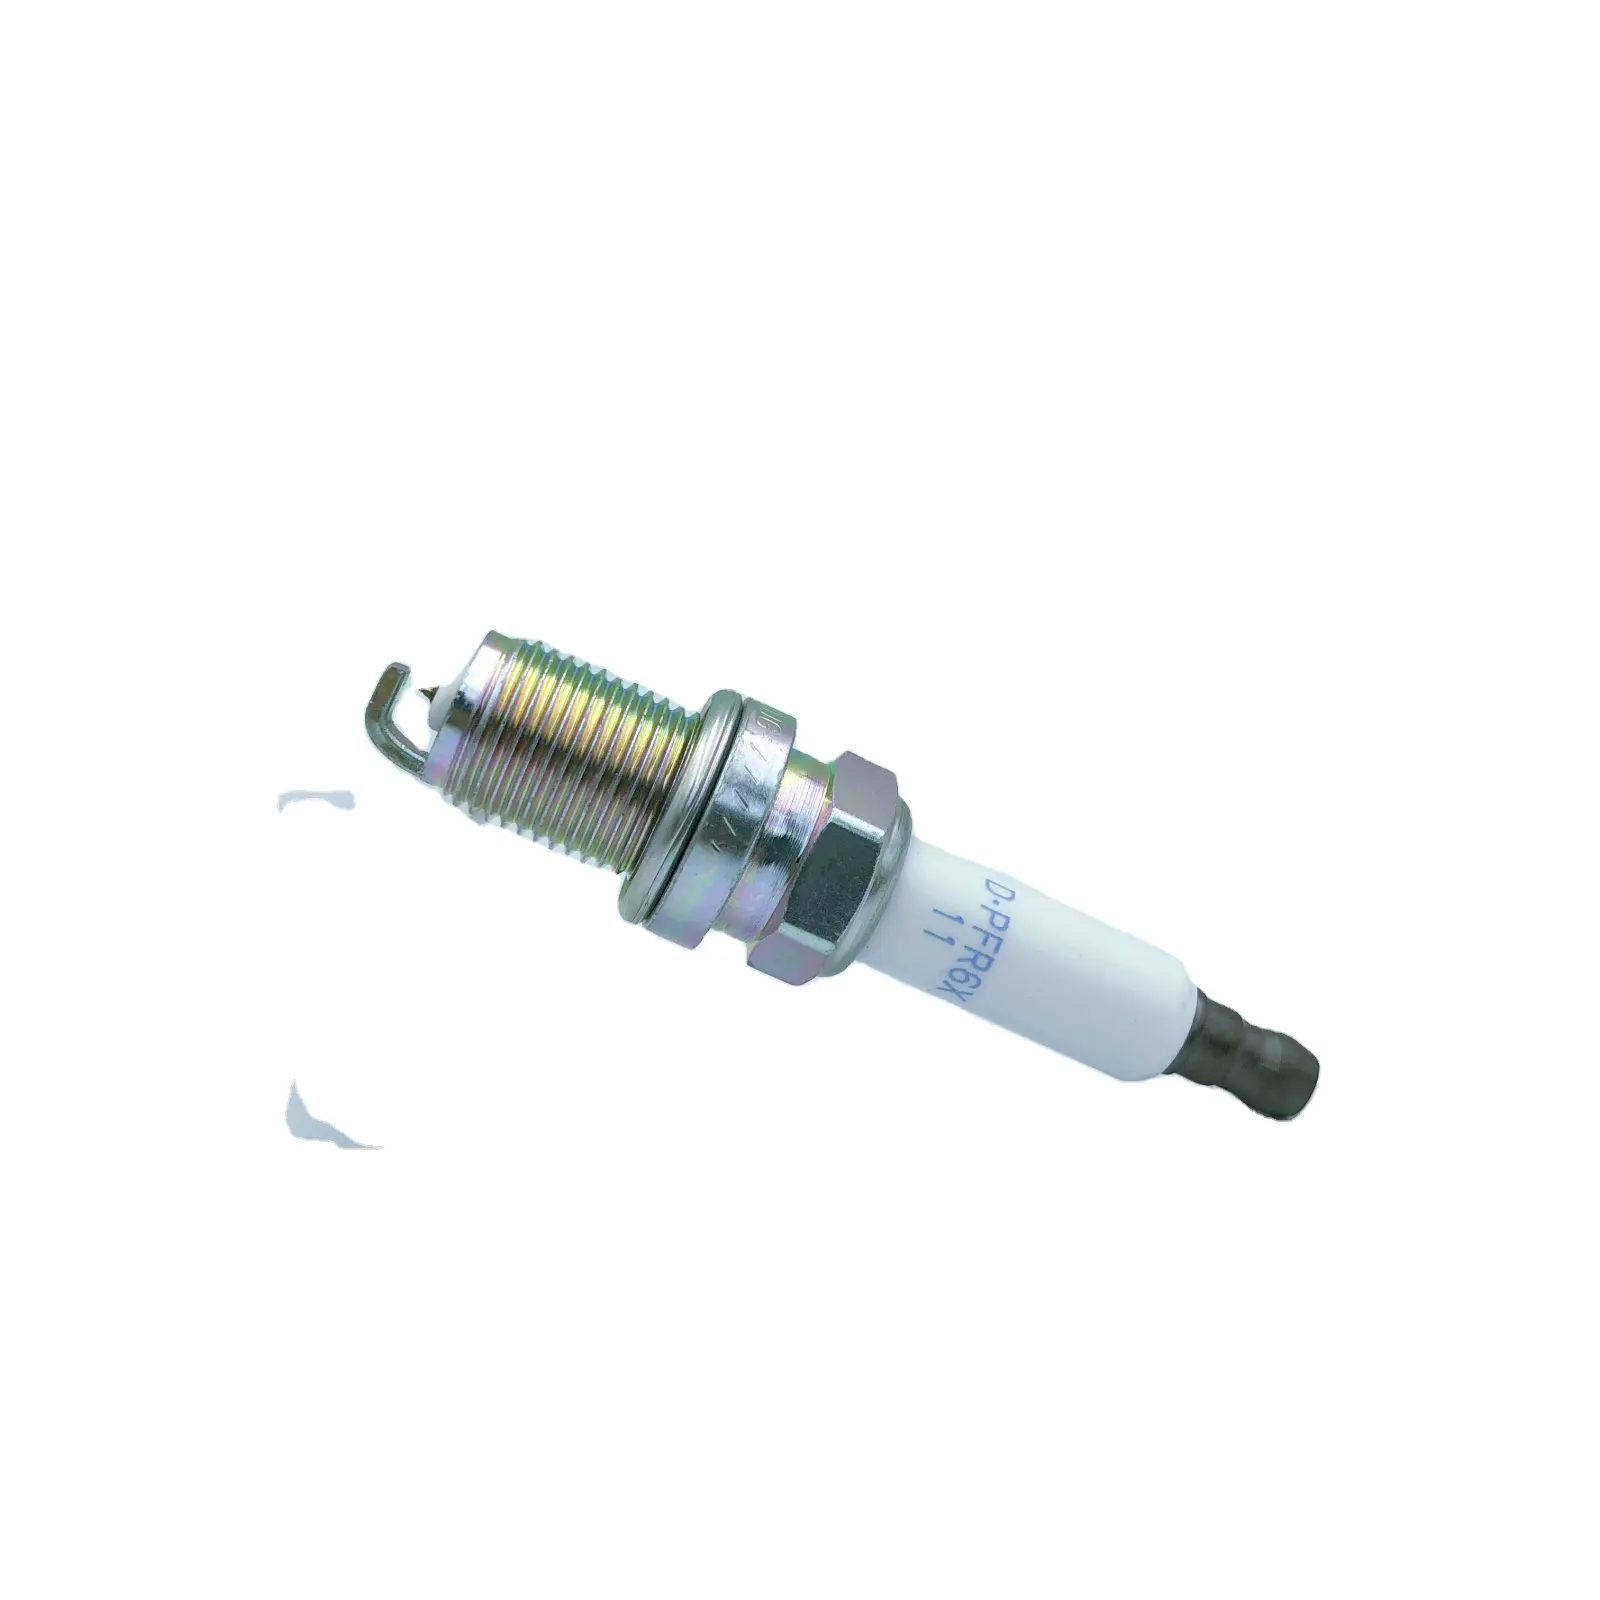 economical cost spark plugs for AUDI A4 A6 Q5 PFR6X-11 PK20PR-L11 101905611 101905631 piesas de carros rc bujias